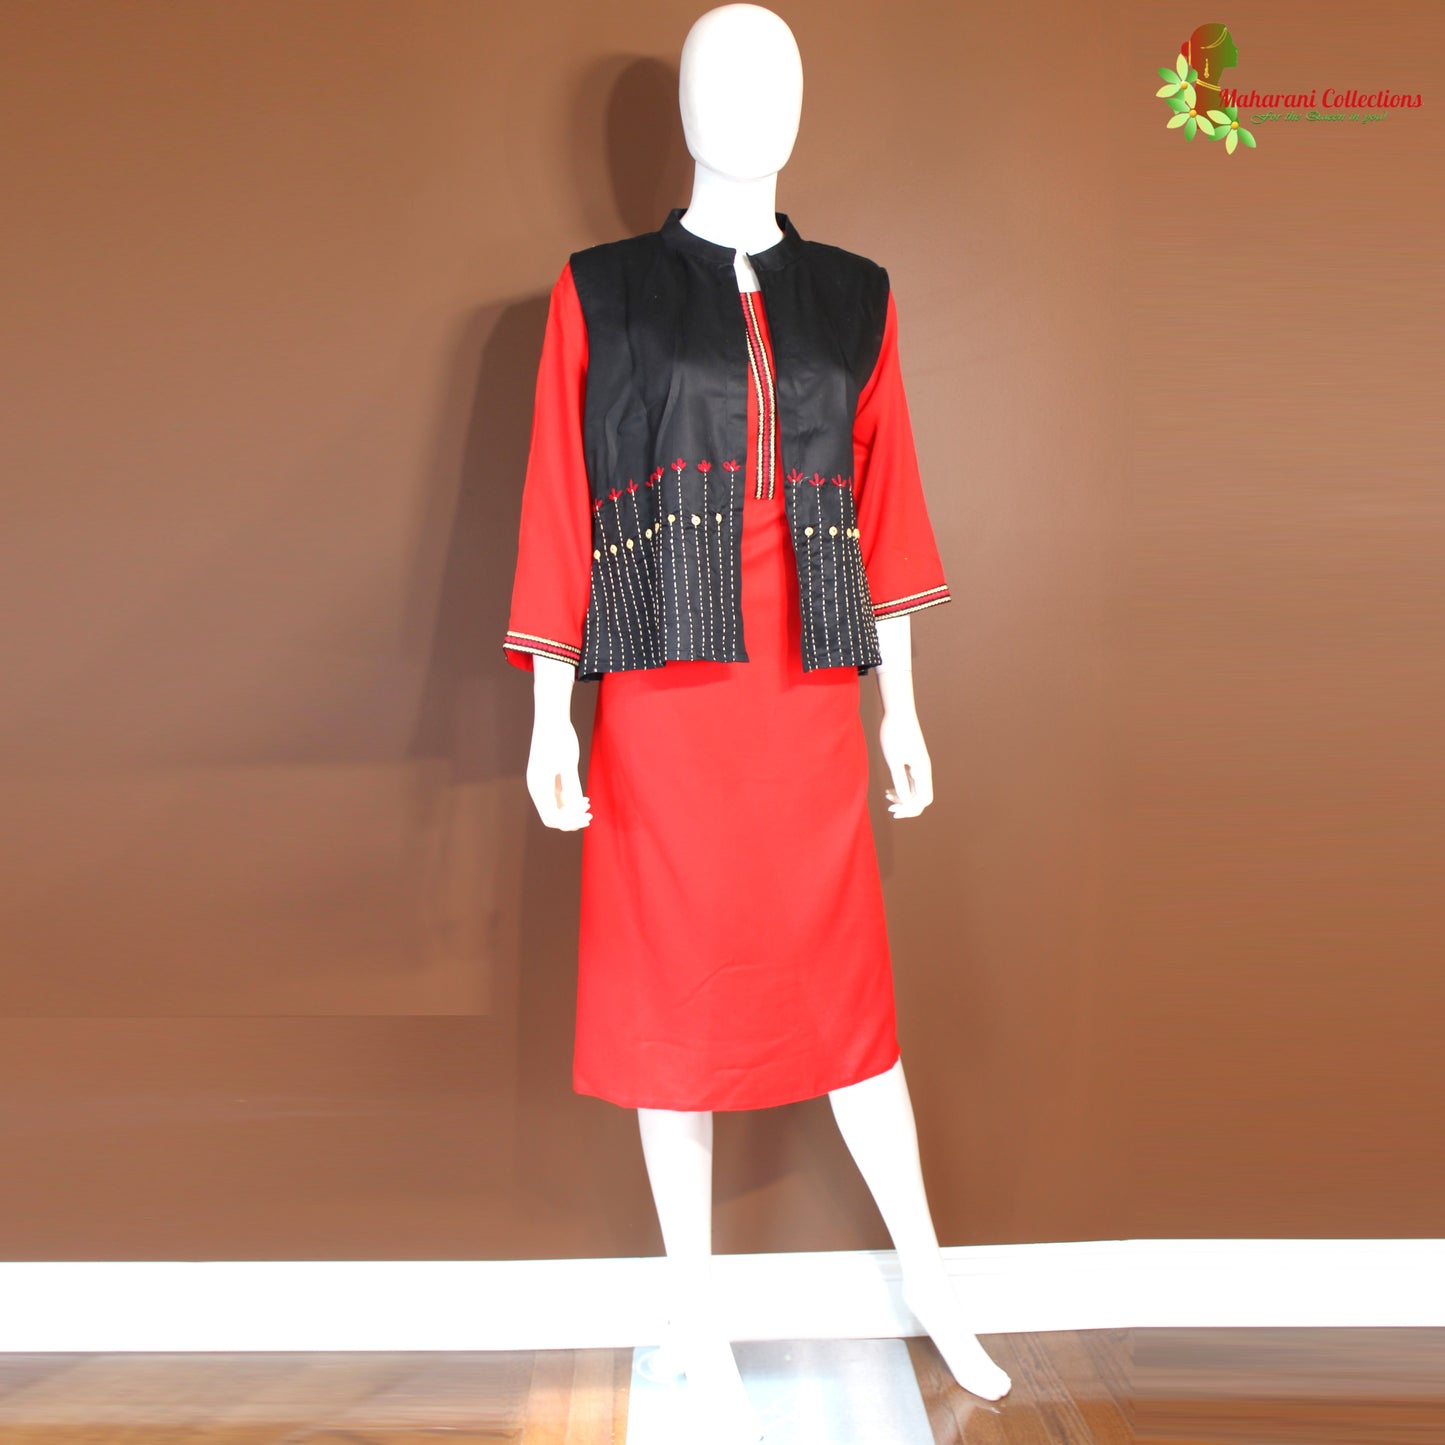 Maharani's Soft Cotton Kurta Top with Jacket - Red (XL)